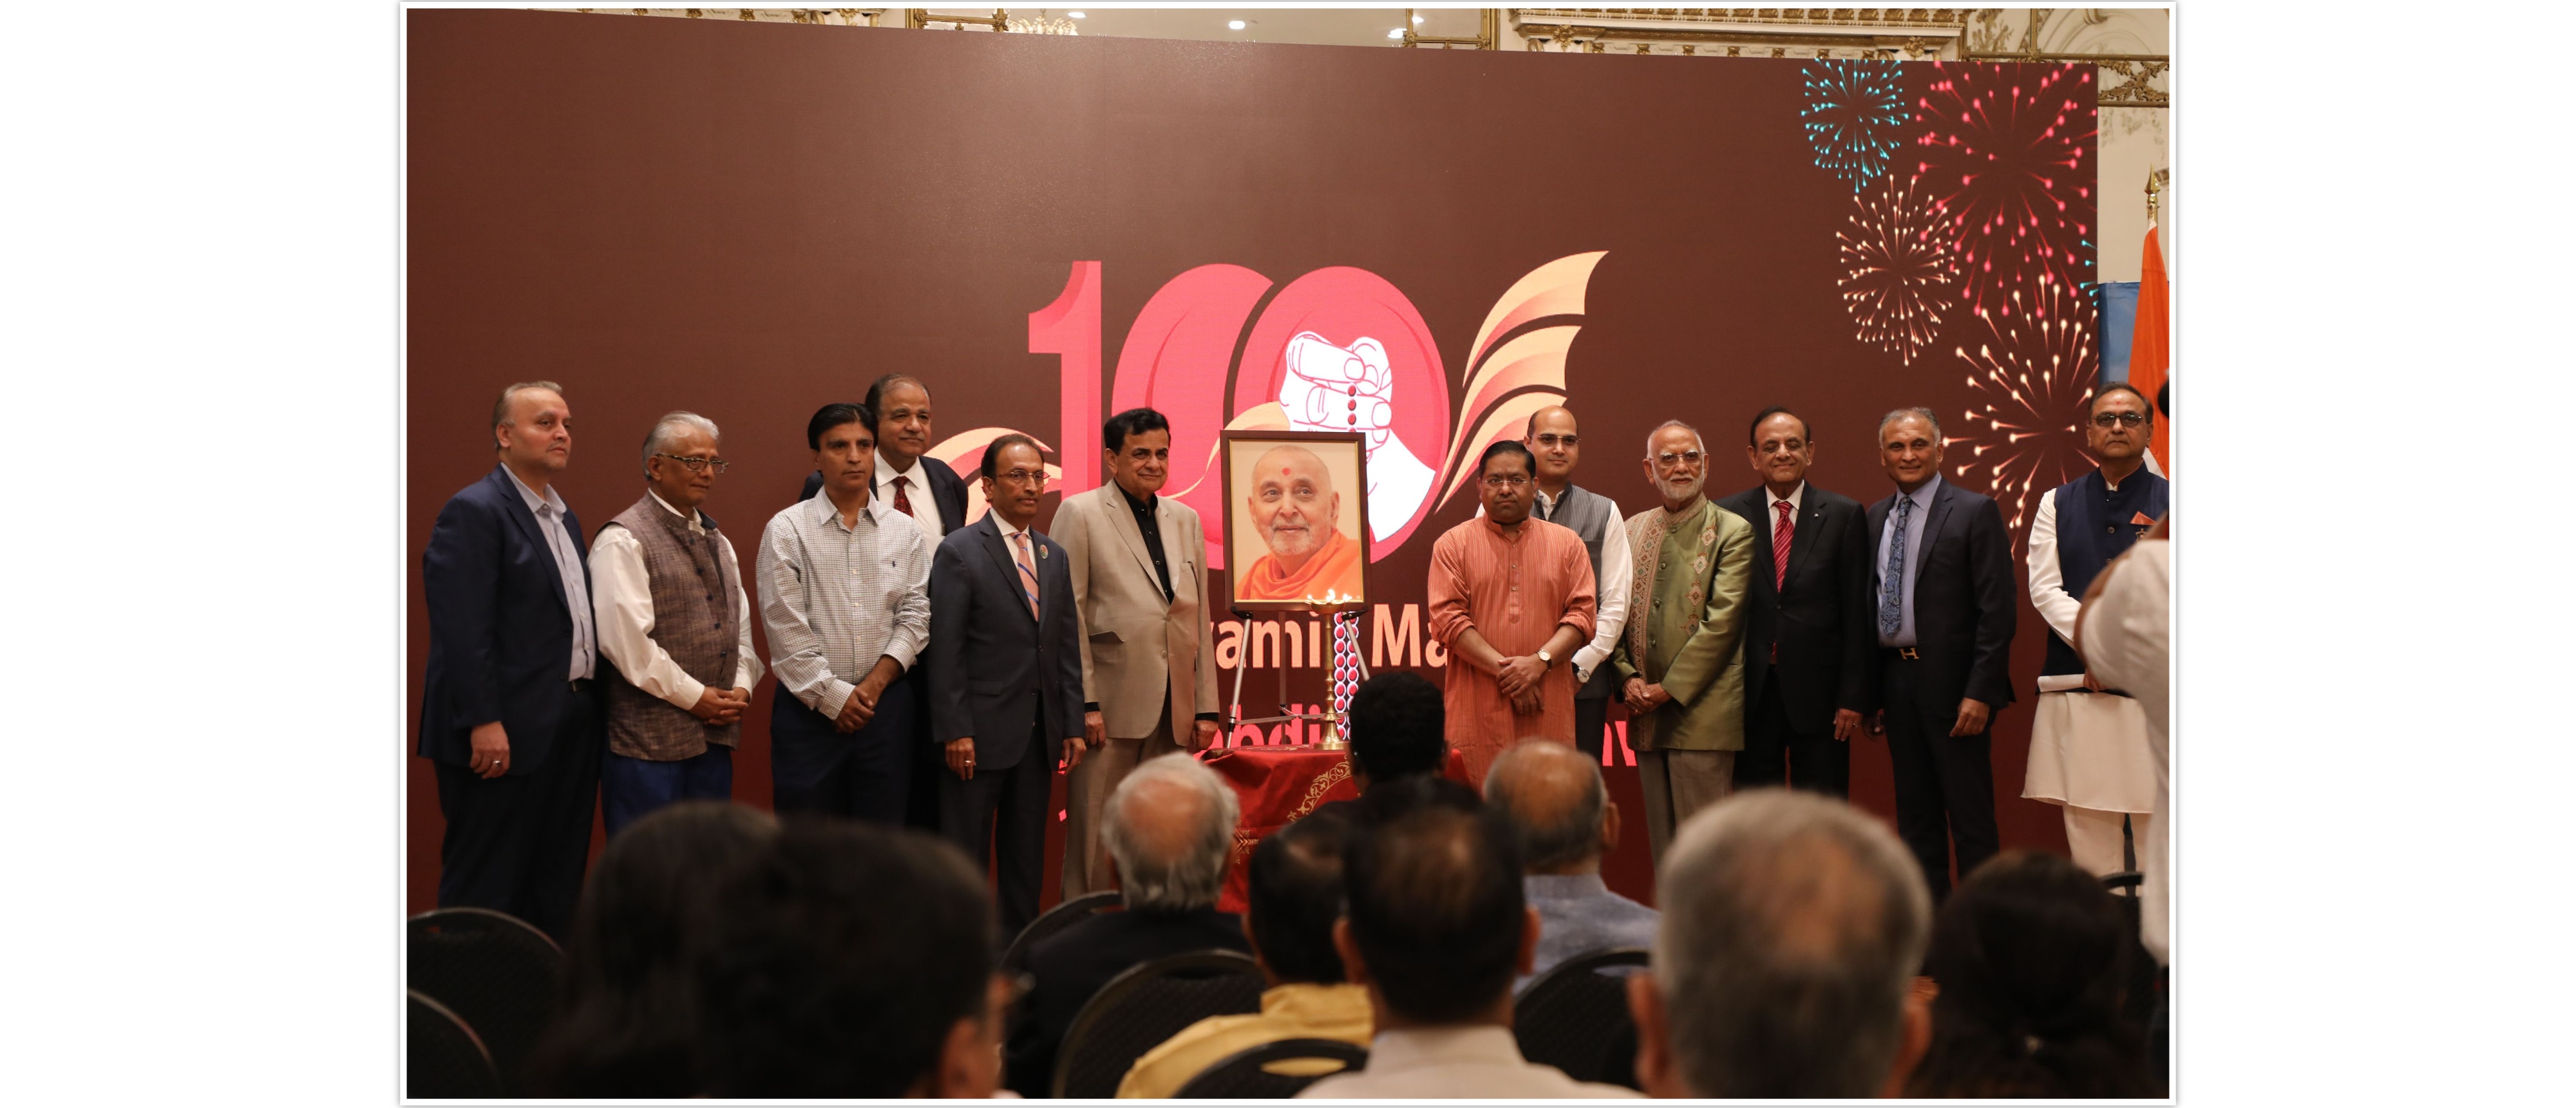  Centennial celebration of Pramukh Swami Maharaj at the Consulate 
